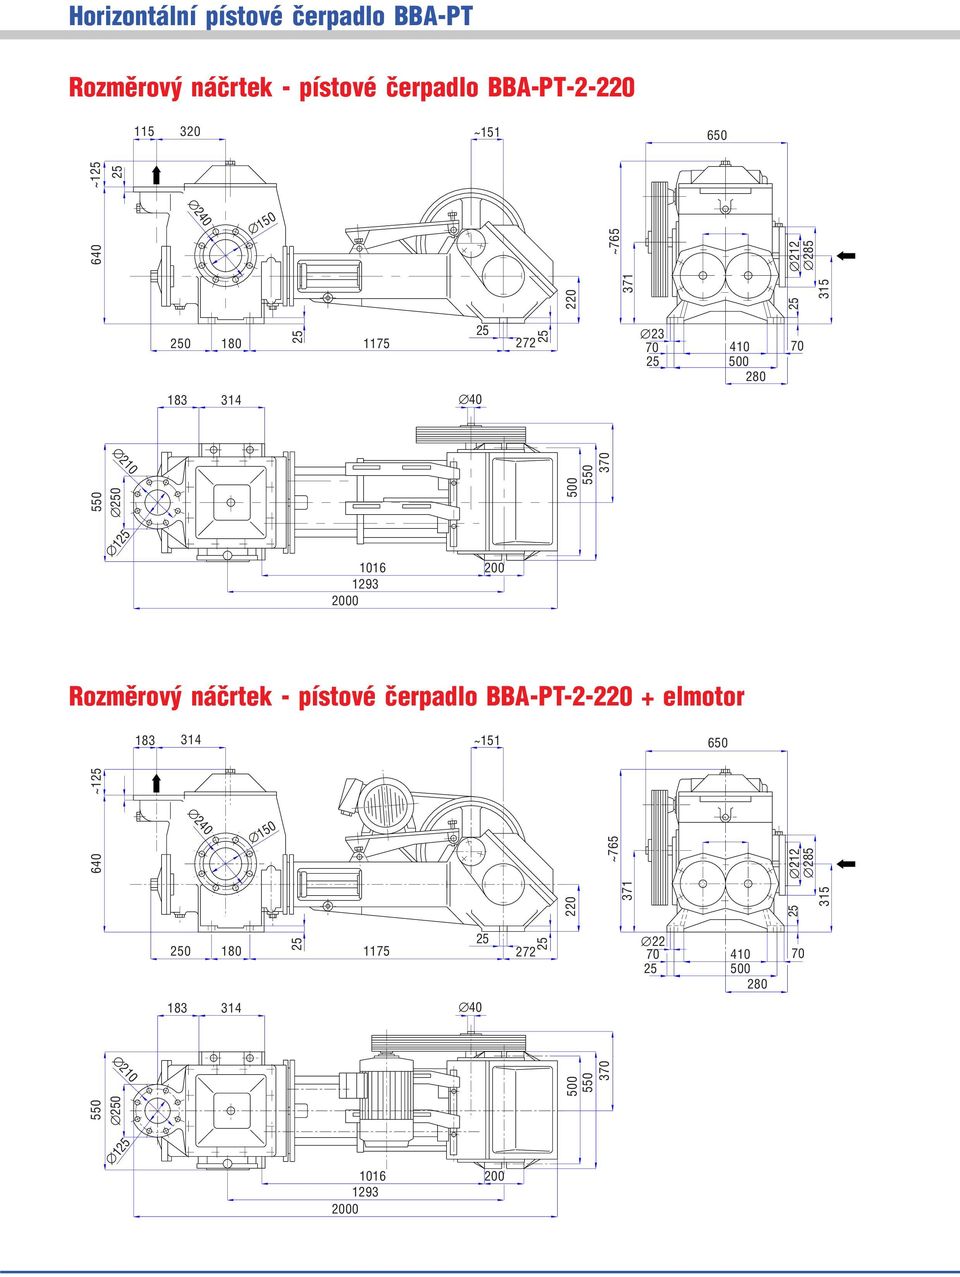 Rozměrový náčrtek pístové čerpadlo BBA PT 2 220 + elmotor 18 1 ~11 0